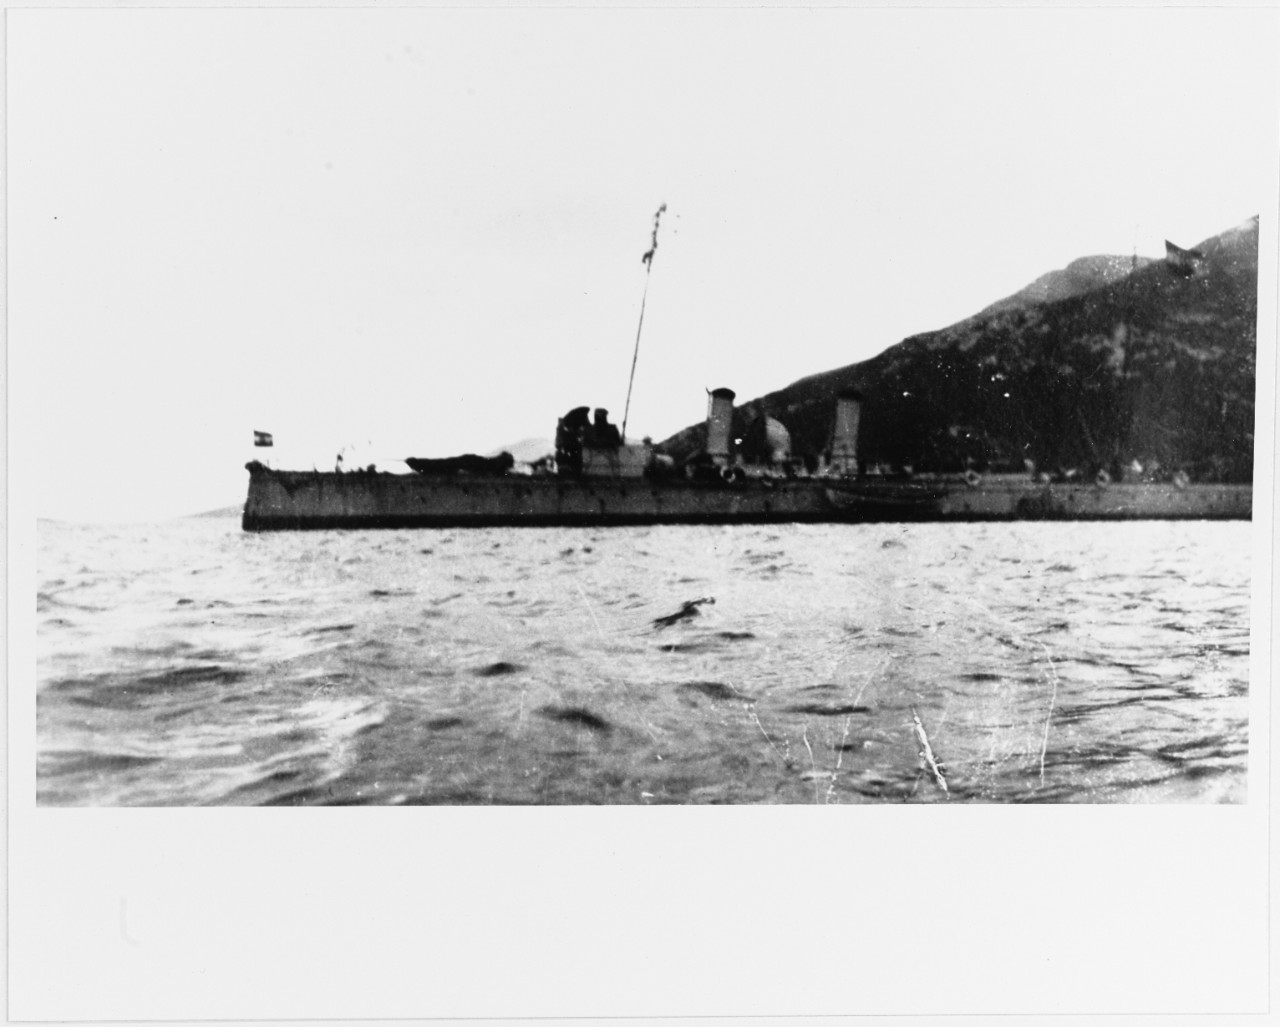 TRABANT (Austrian Torpedo Gunboat, 1890-1920)